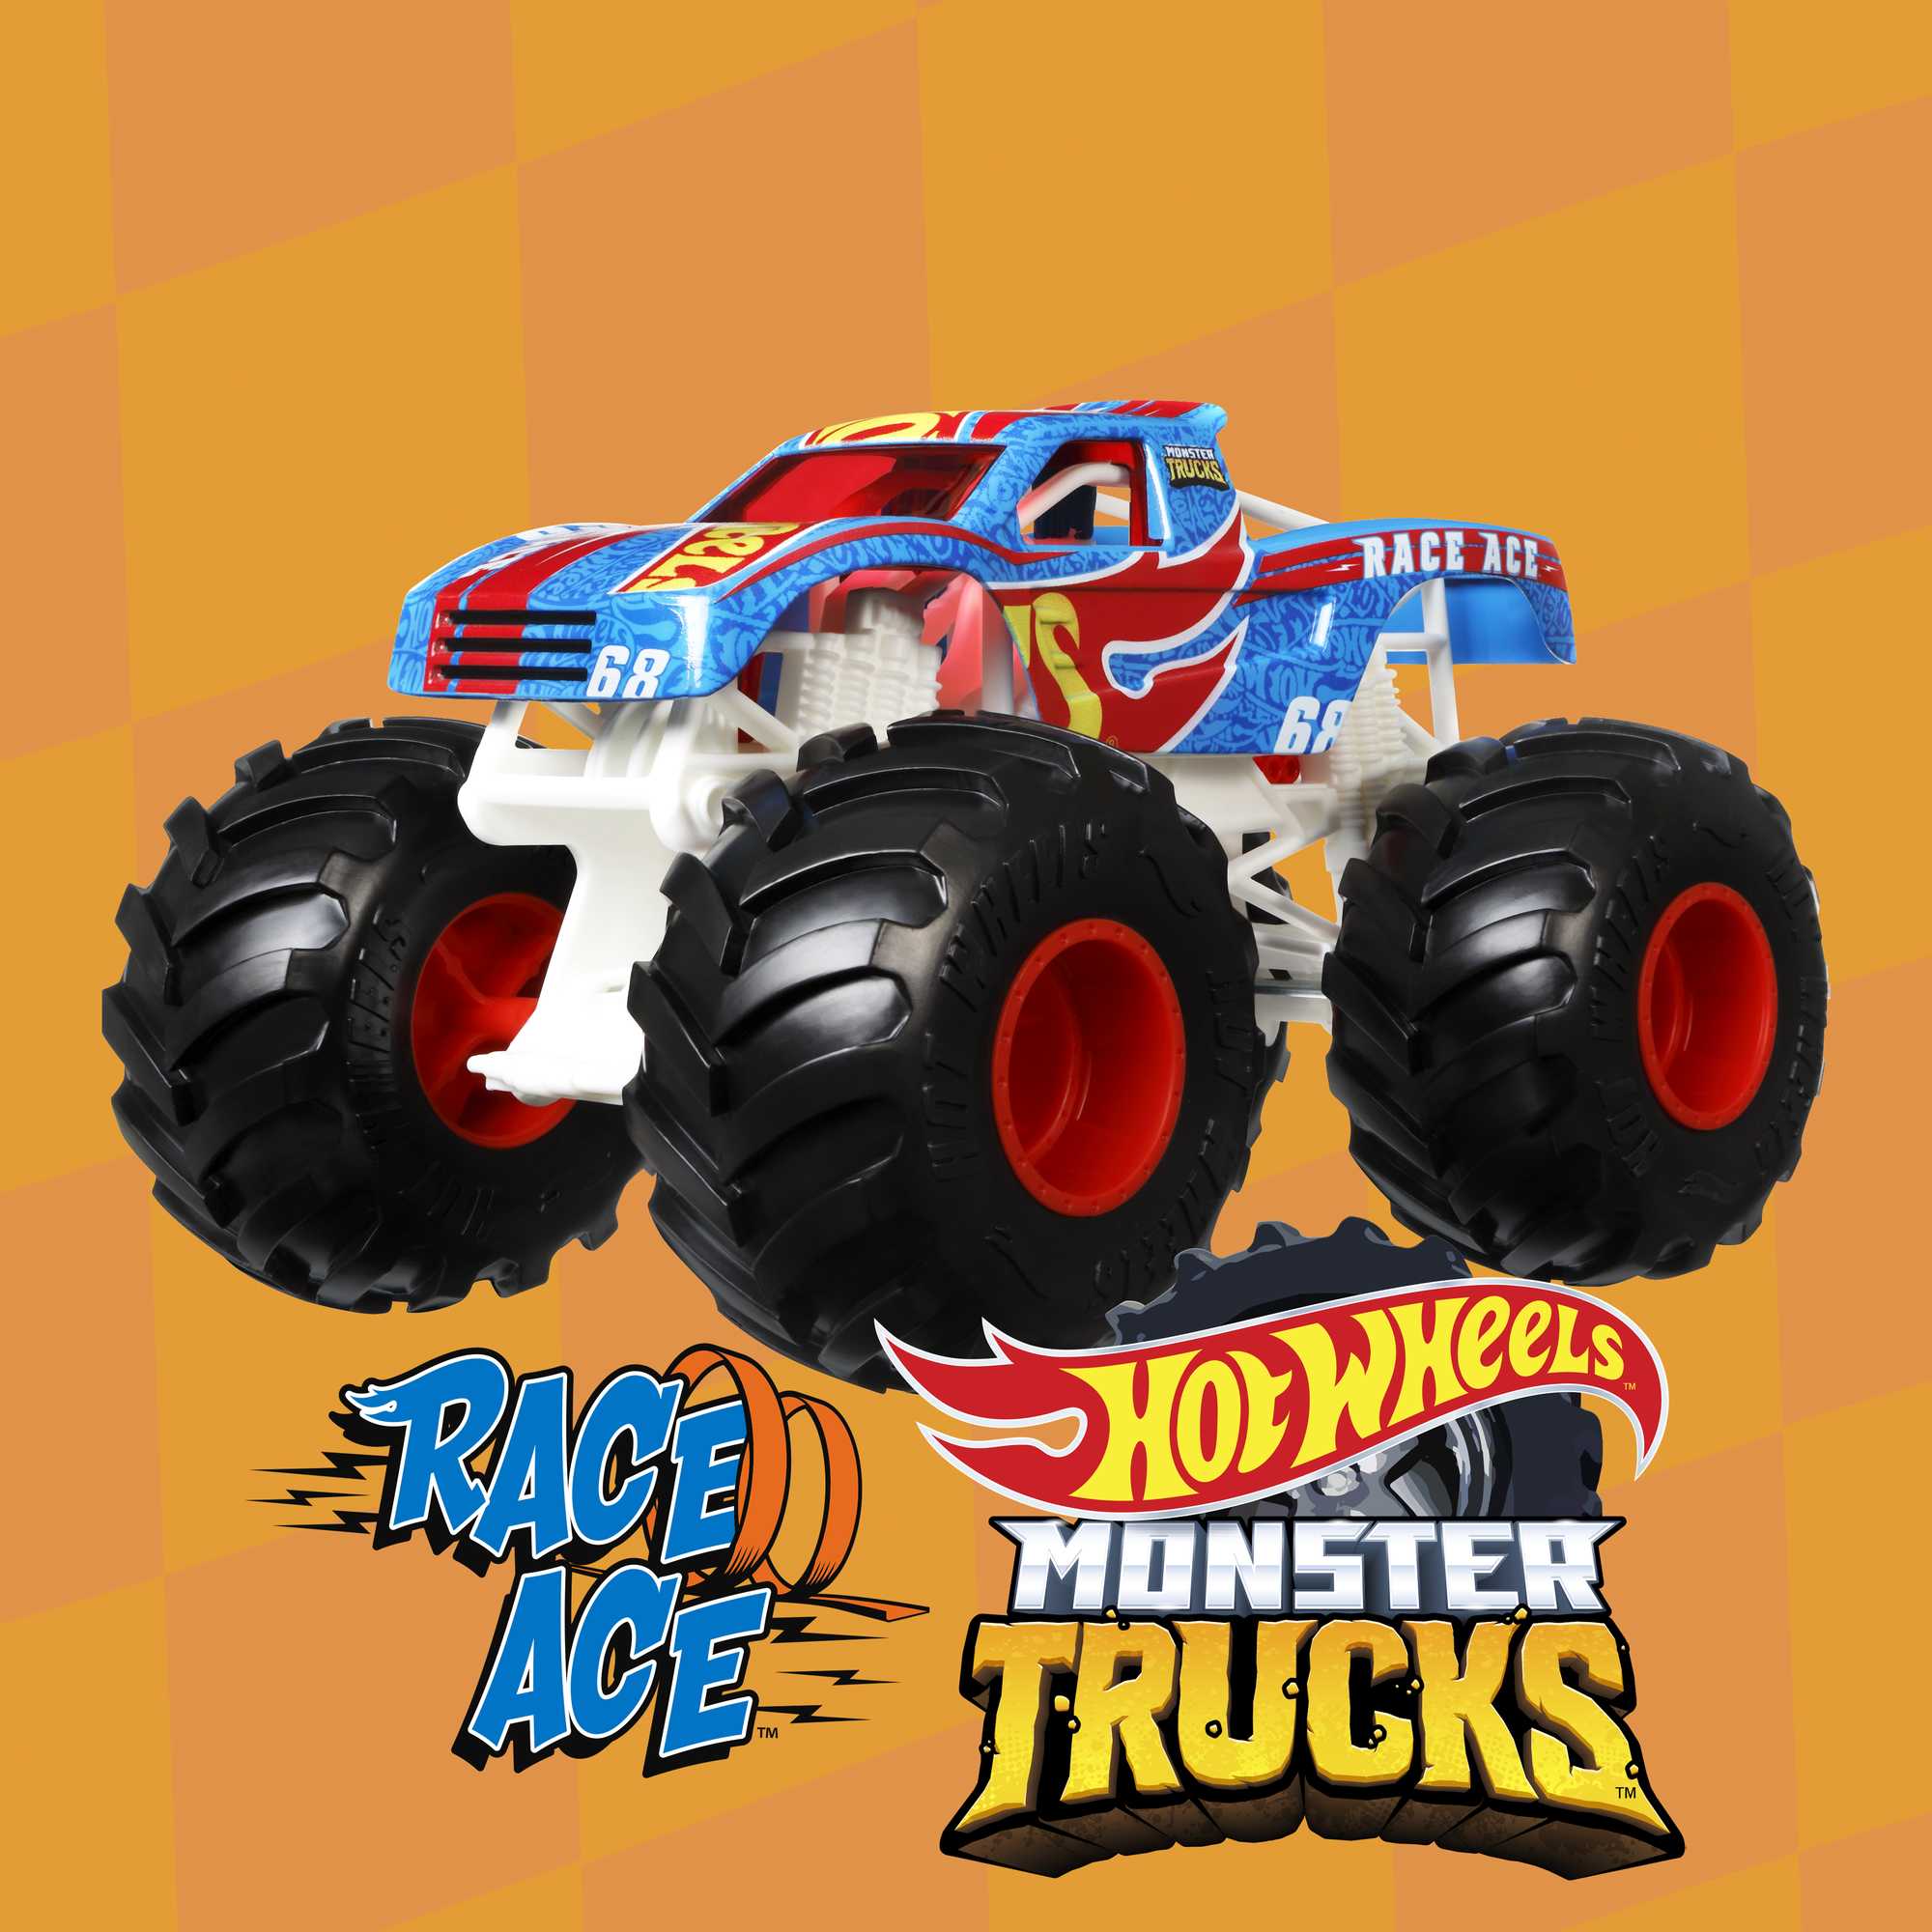 Hot Wheels Monster Trucks 1:24 Scale Assortment for Kids Age 3 4 5